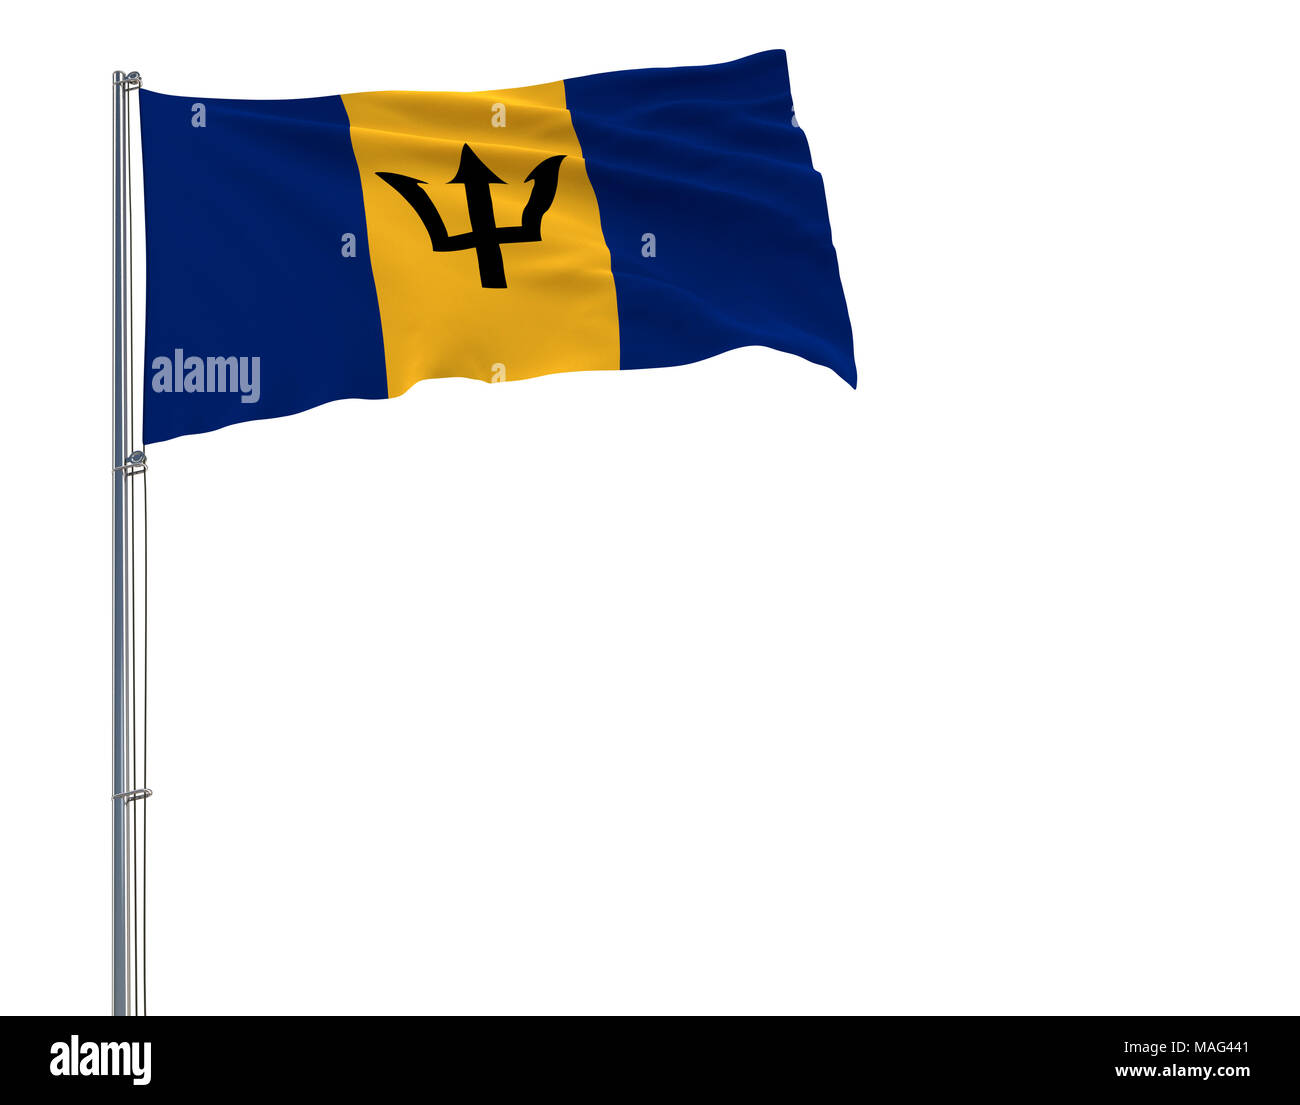 Aislar la bandera de Barbados en una bandera ondeando en el viento sobre un fondo blanco, 3D rendering Foto de stock